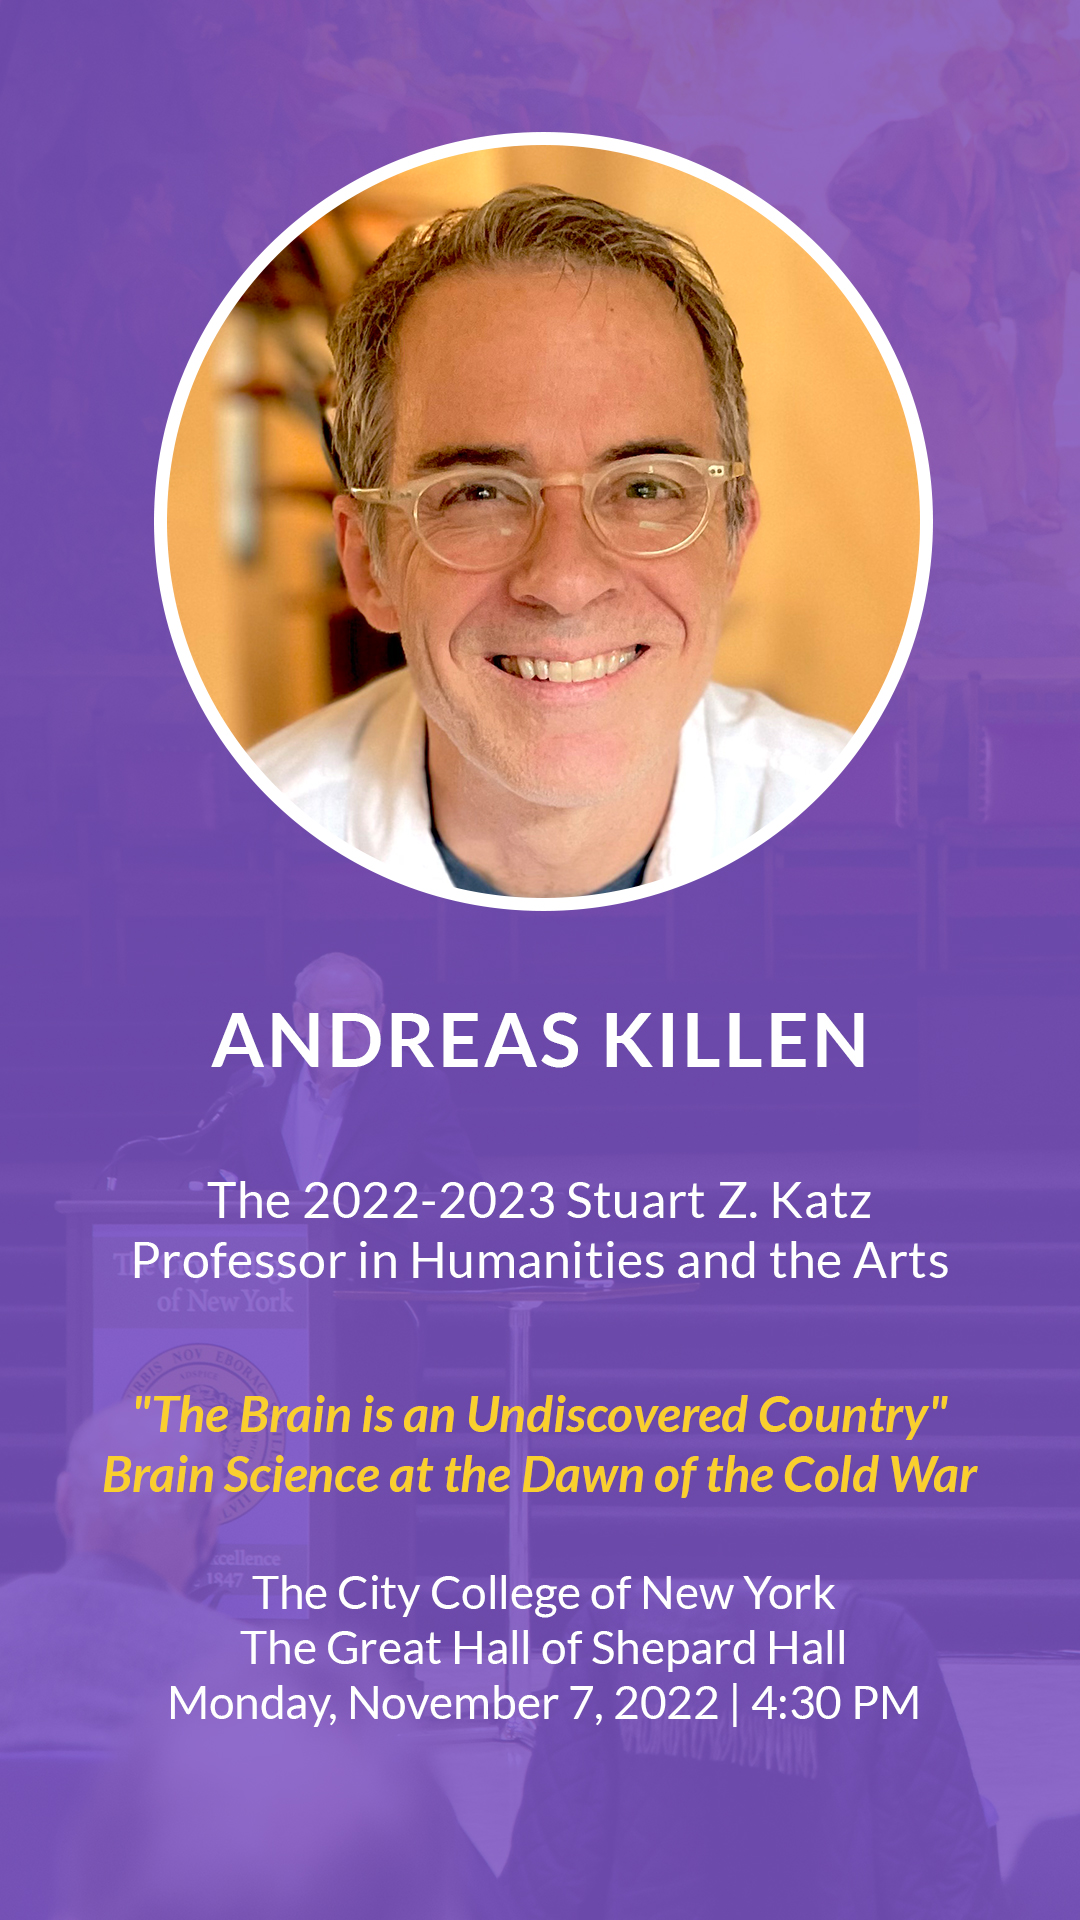 Katz Professor 2022-2023 Andreas Killen